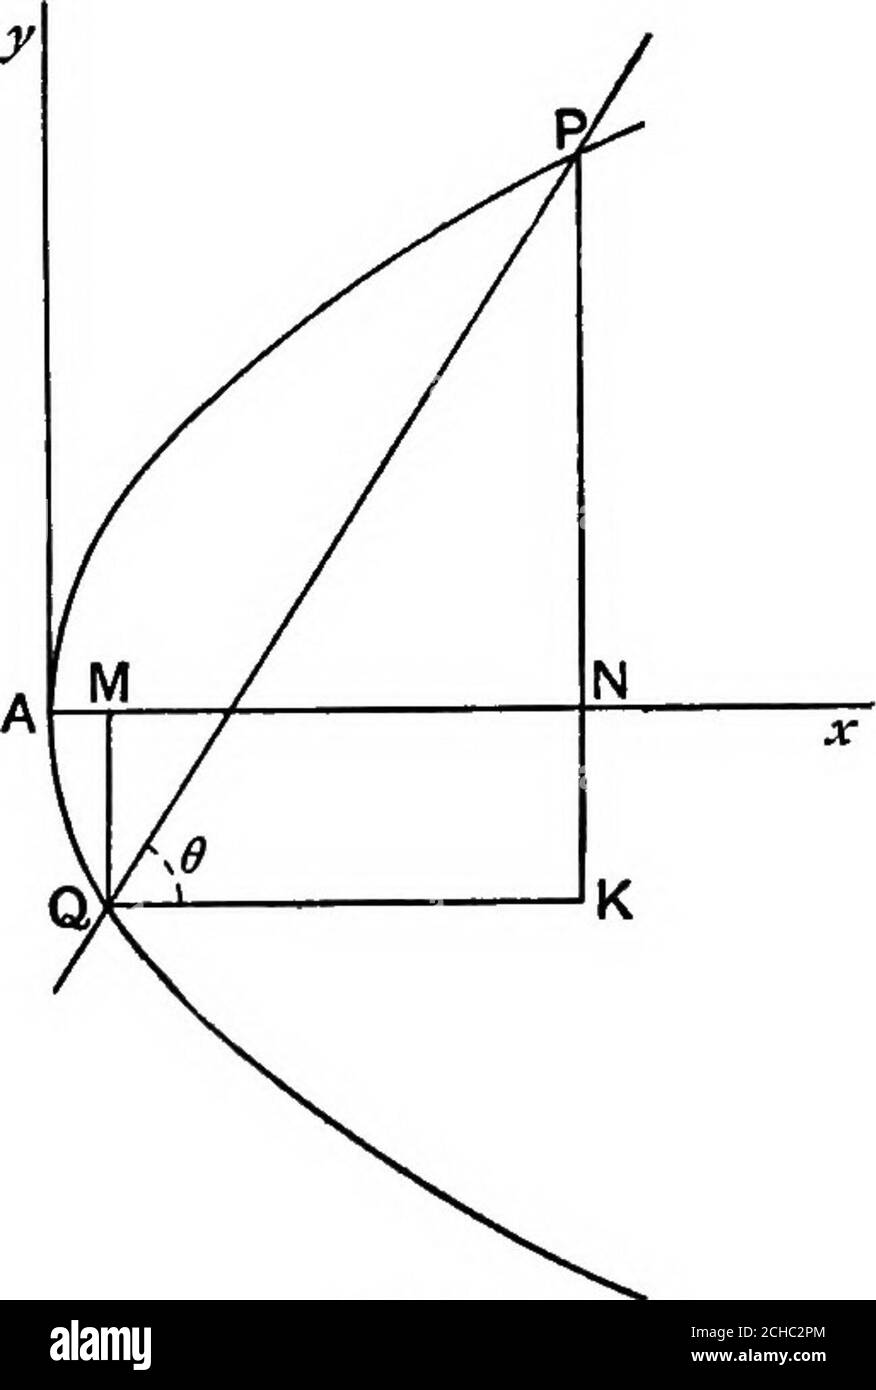 . Géométrie algébrique; un nouveau traité sur les sections coniques analytiques . PIQ. 92. 16a^ l&ac 16a , , m. FIQ. 93. .. De (1),   4V«i(ffl-ctan6)sin 6. Tan 0 IV!5. Si PQ coupe la courbe dans la deuxième figure, PK est stillequal à la différence algébrique des racines du quadratique, fore l'ordonnée de Q est négative. 150. Les toits infinis d'une équation de quach-aticequation. Prendre l'axe quadratique ^ + bx + c = 0, (1) et laisser « = -, de sorte que x = -.« y lors du remplacement dans (1), on a un b . ou cy^ + par + a = 0 (2) maintenant si ffi = 0, une racine de (2) est zéro, c'est-à-dire qu'une valeur de y est zéro. 136 LE PAEABOLA. [chapitre vni. Buta ; = - Banque D'Images